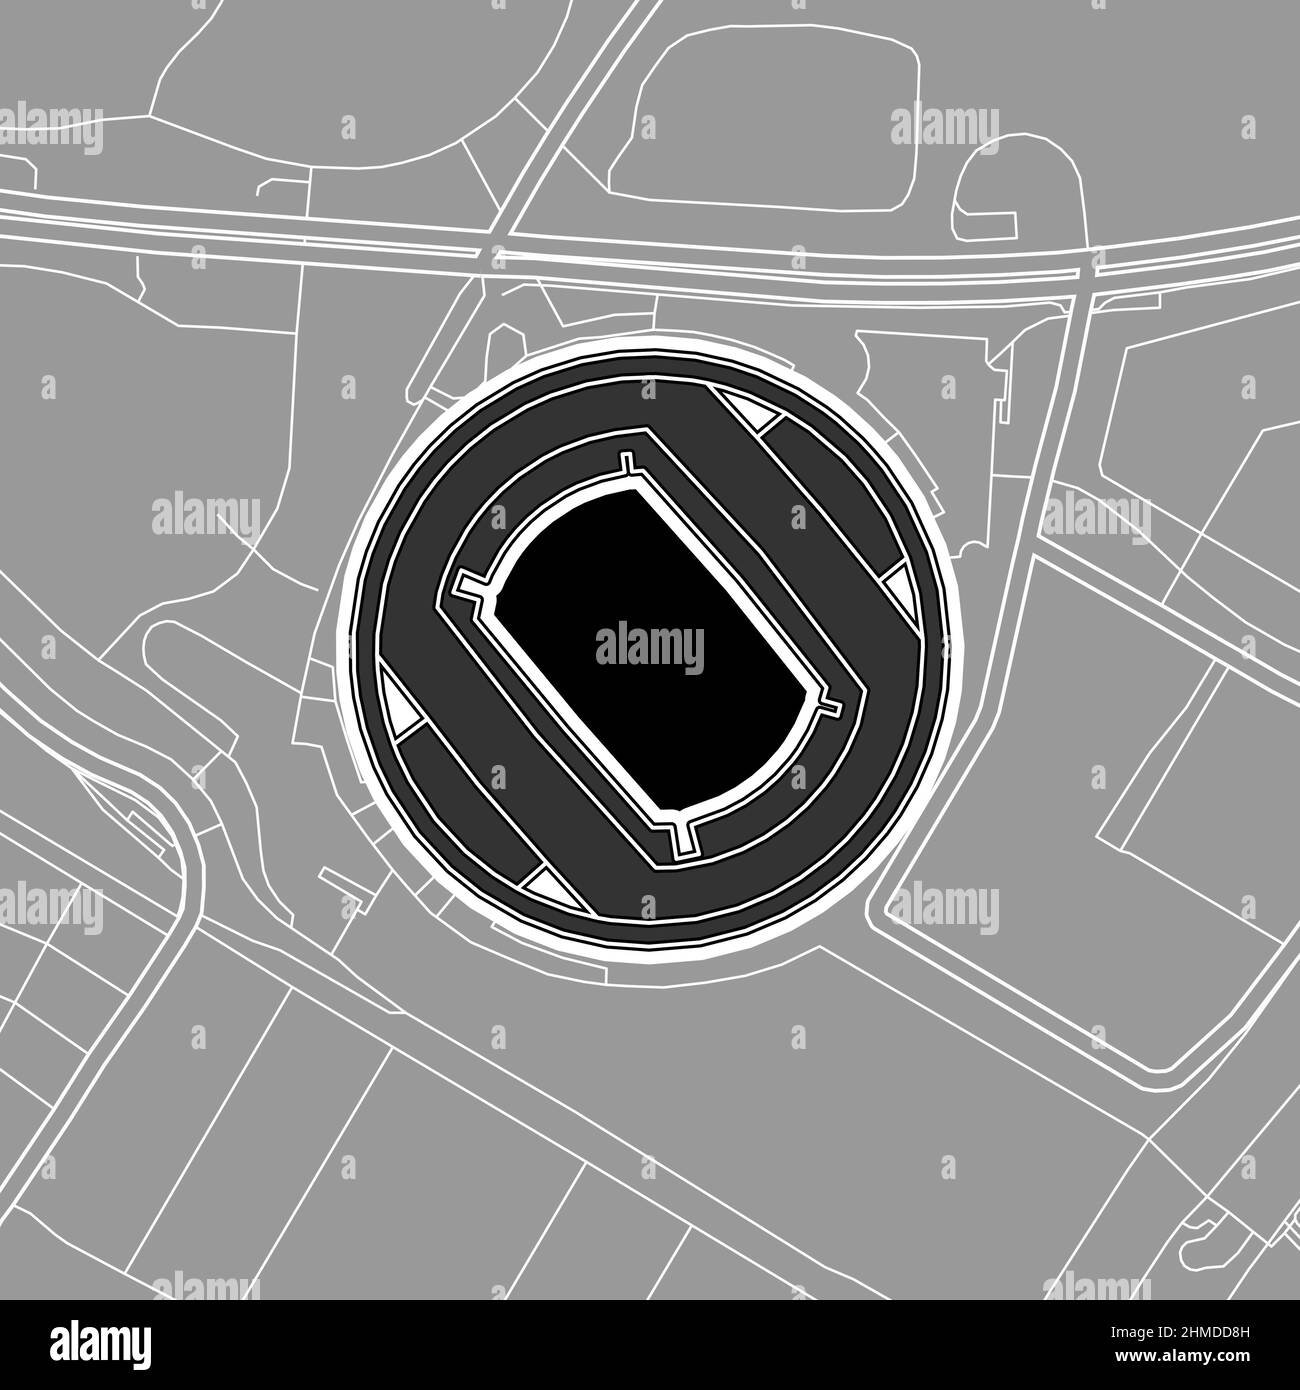 Yokohama, MLB-Baseballstadion, Vektorkarte. Die Baseballstatiumkarte wurde mit weißen Flächen und Linien für Hauptstraßen, Nebenstraßen, gezeichnet. Stock Vektor